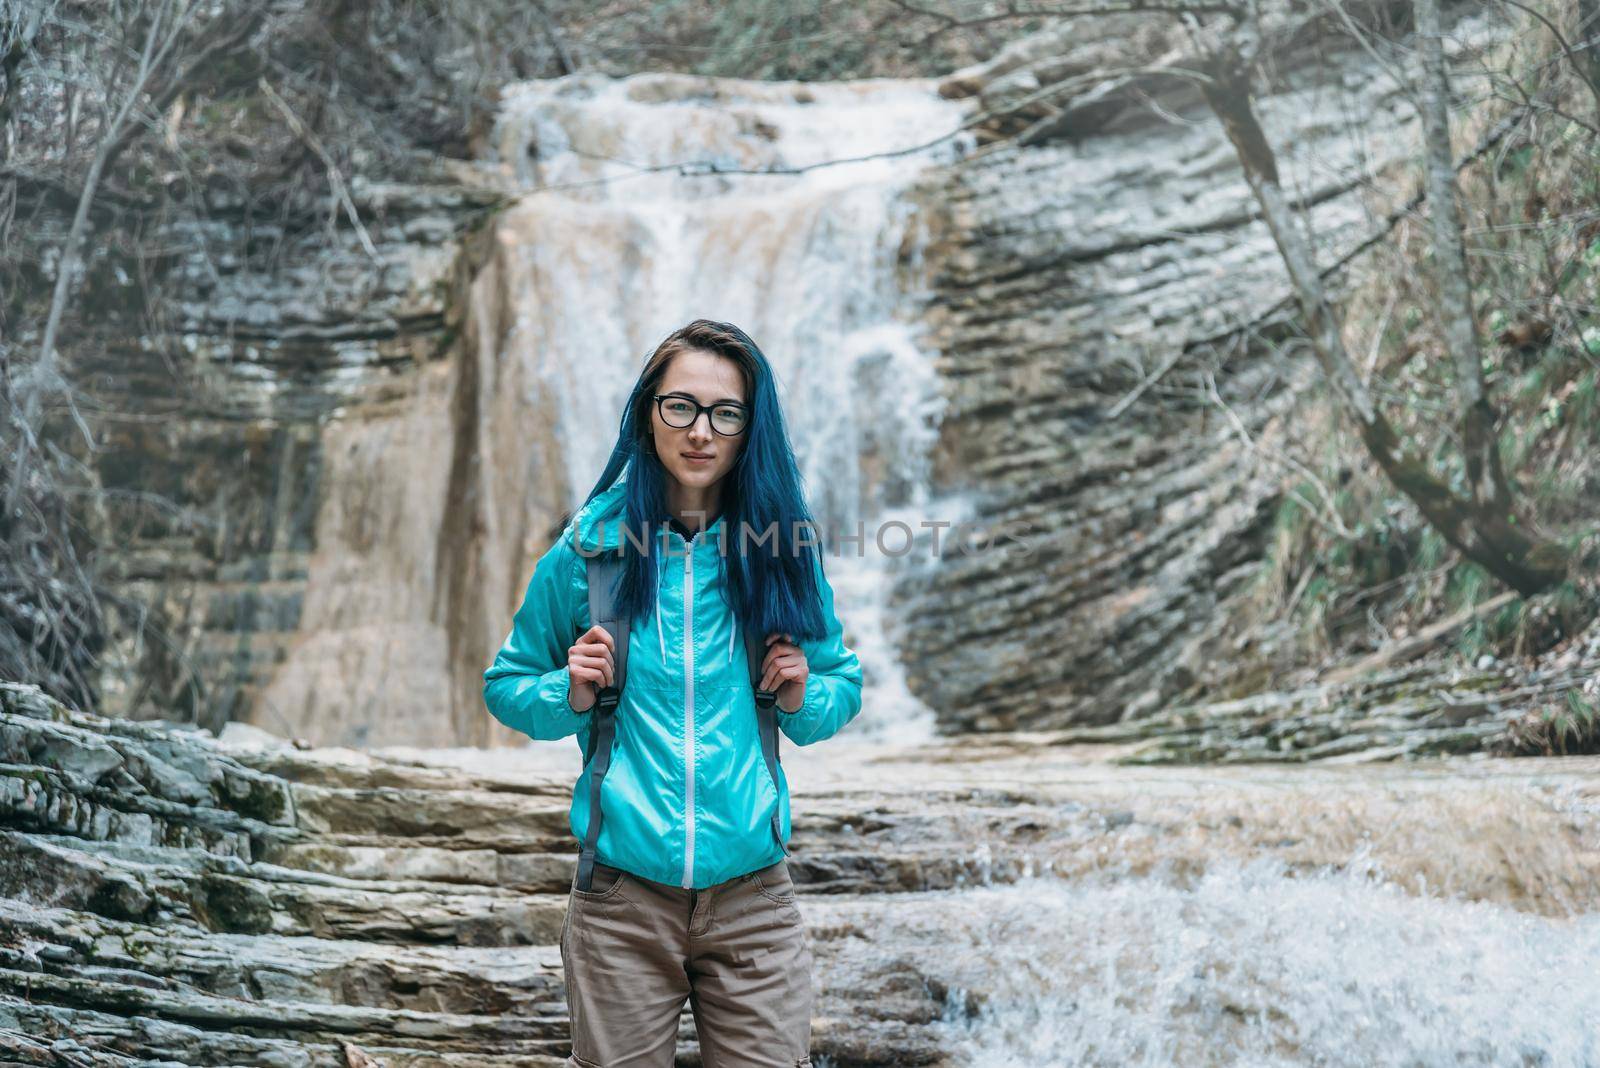 Beautiful traveler on background of waterfall by alexAleksei